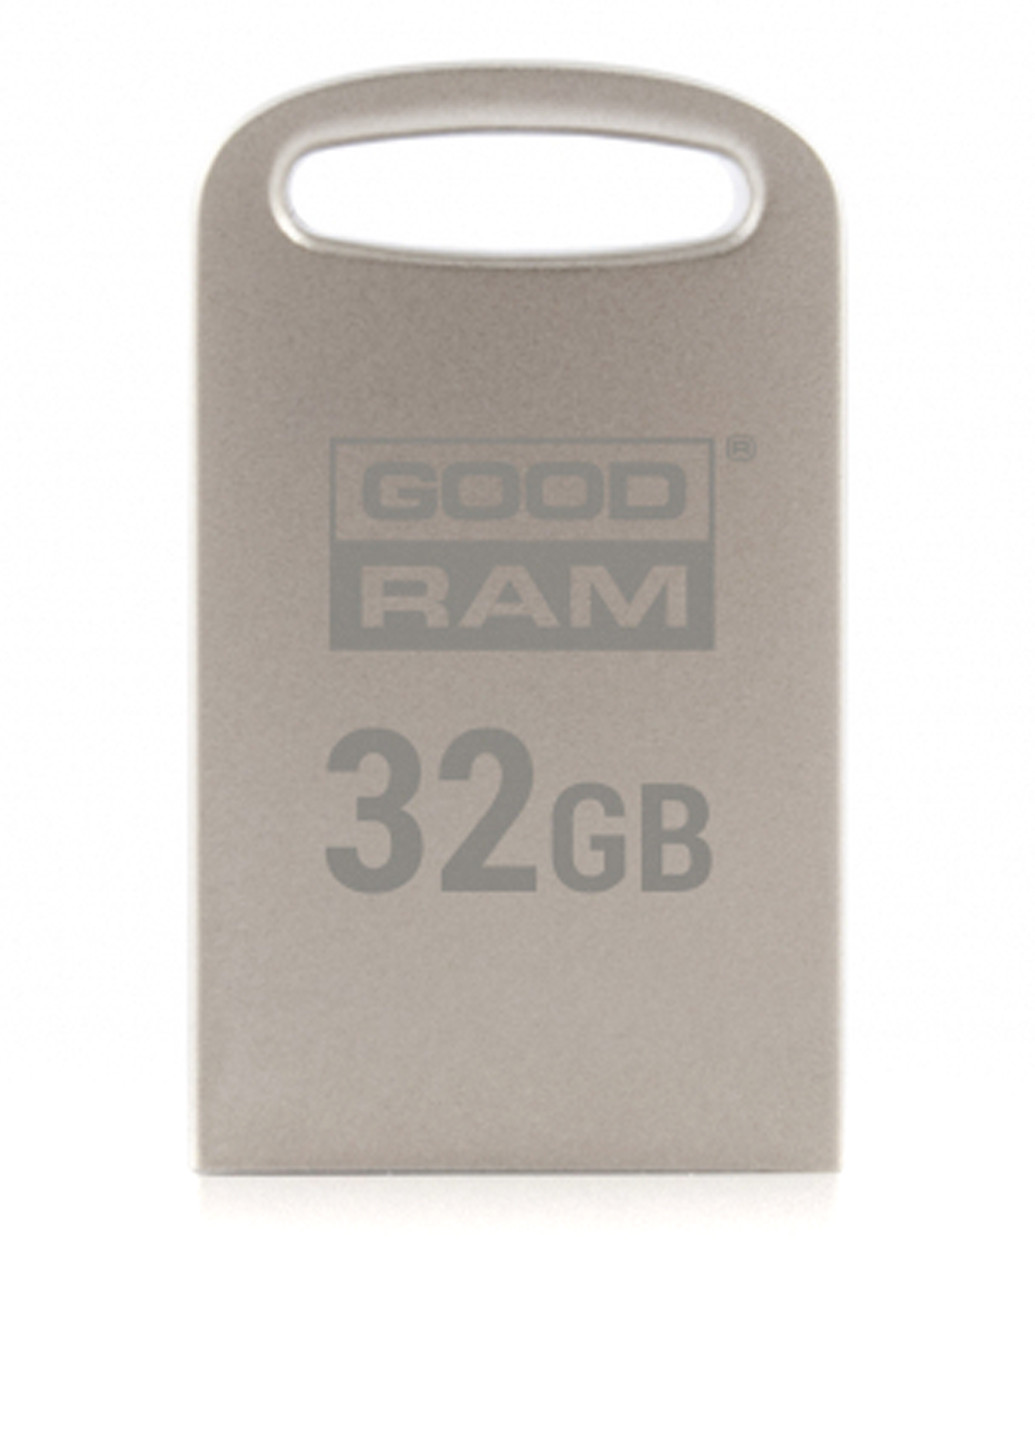 Флеш память USB Point 32GB USB 3.0 Silver (UPO3-0320S0R11) Goodram флеш память usb goodram point 32gb usb 3.0 silver (upo3-0320s0r11) (136742781)